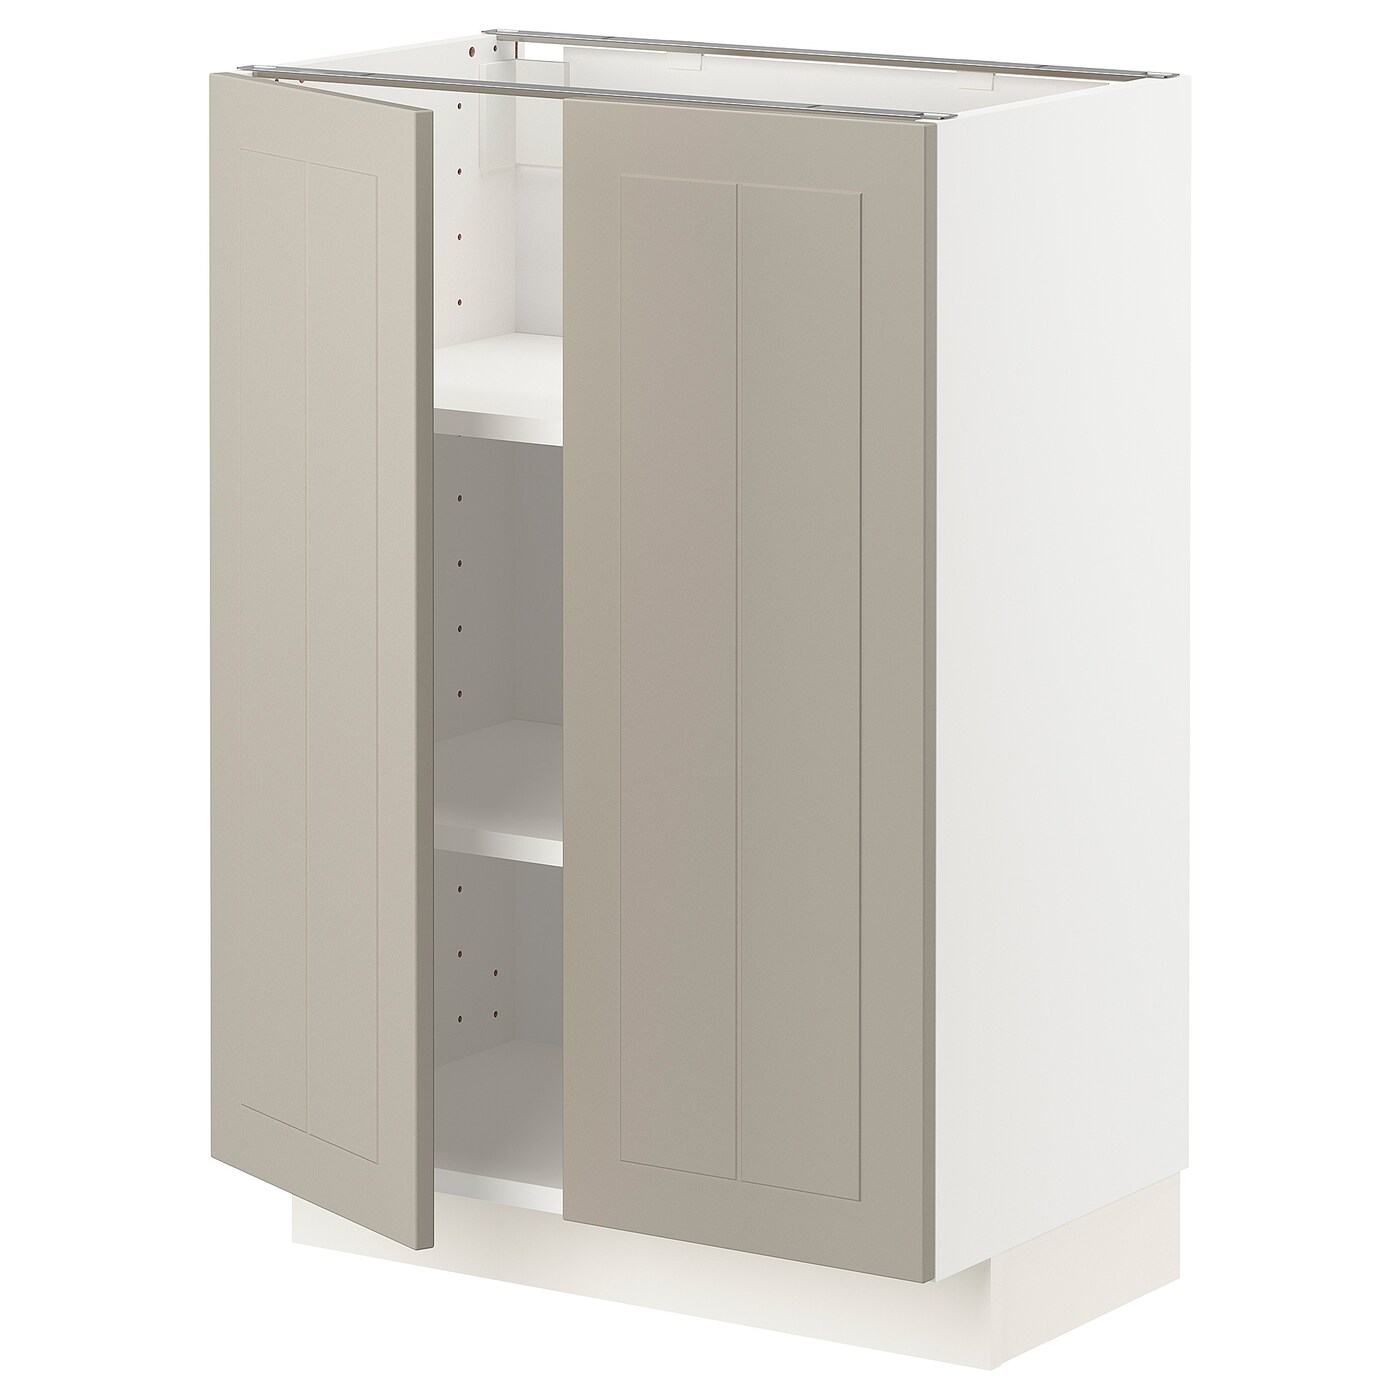 Напольный шкаф - IKEA METOD, 88x39x60см, белый/бежевый, МЕТОД ИКЕА